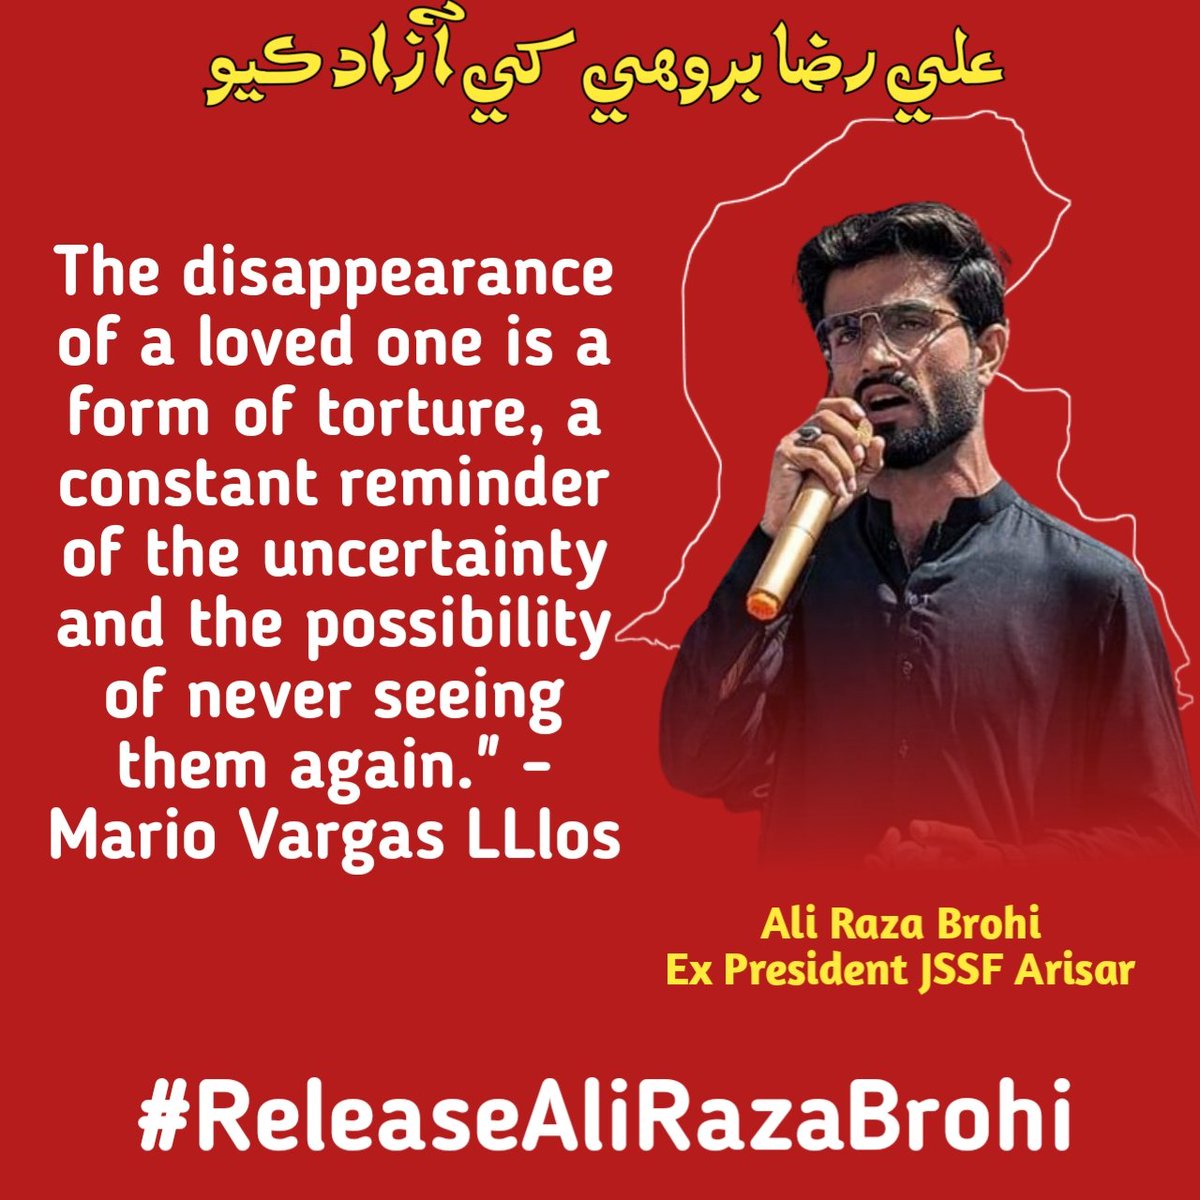 وہ جو یونیورسٹی کا طالب علم ہے اور آپ اس سے خوفزدہ ہیں.؟ کتنے بزدل ہو. #ReleaseAliRazaBrohi